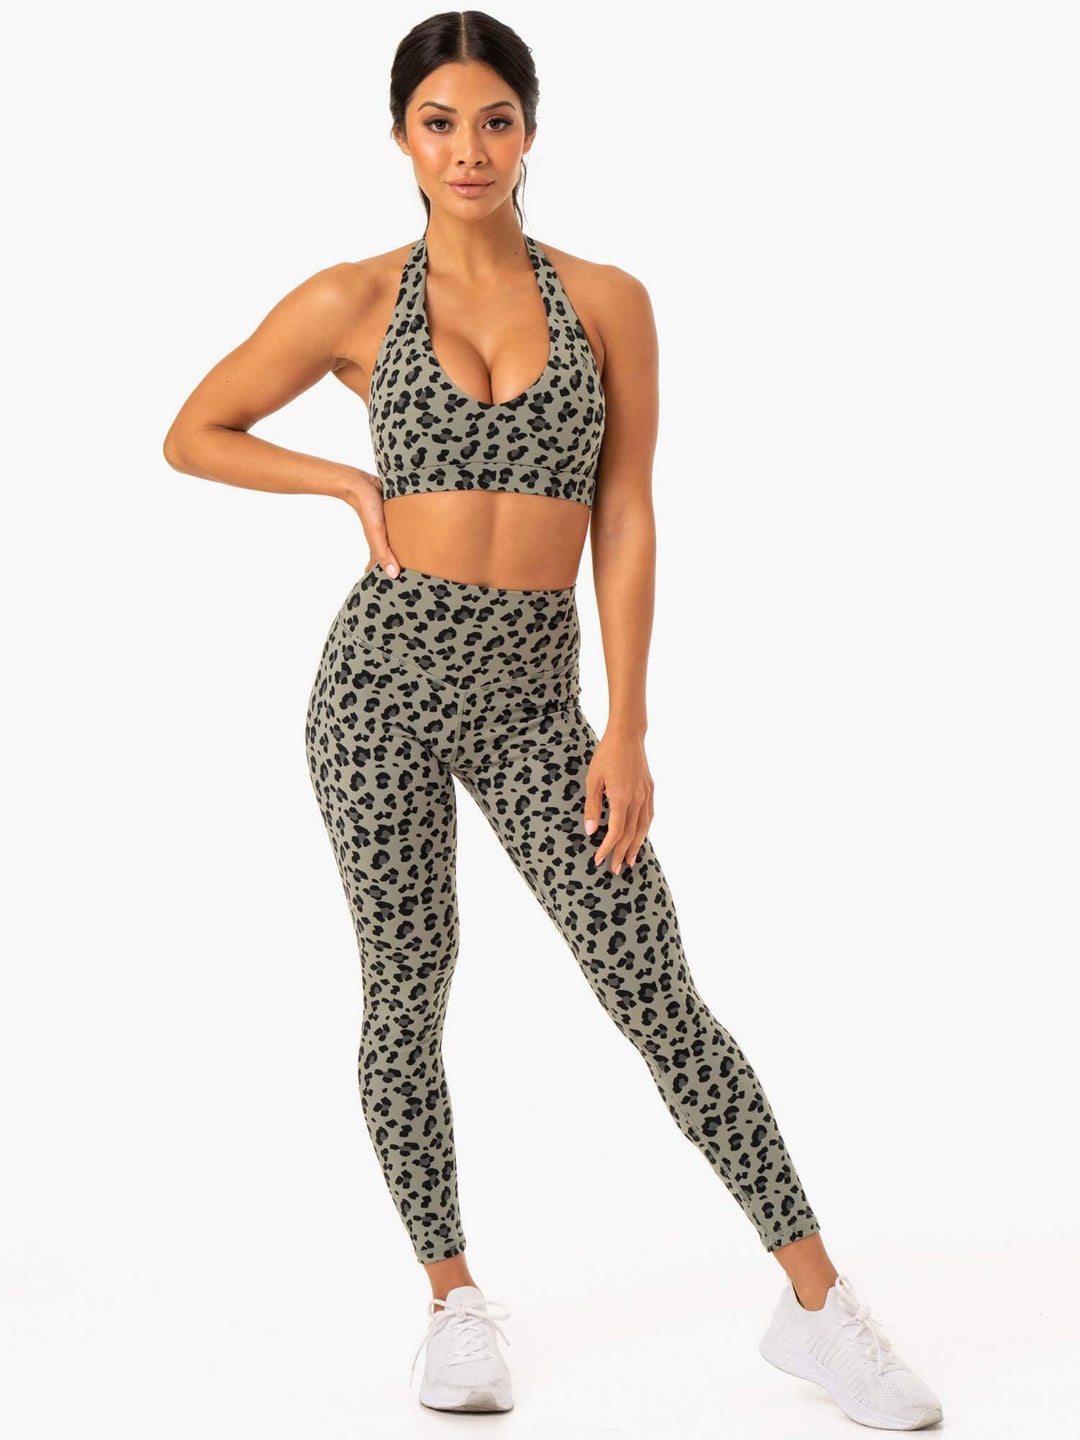 Hybrid Full Length Leggings - Khaki Leopard Clothing Ryderwear 